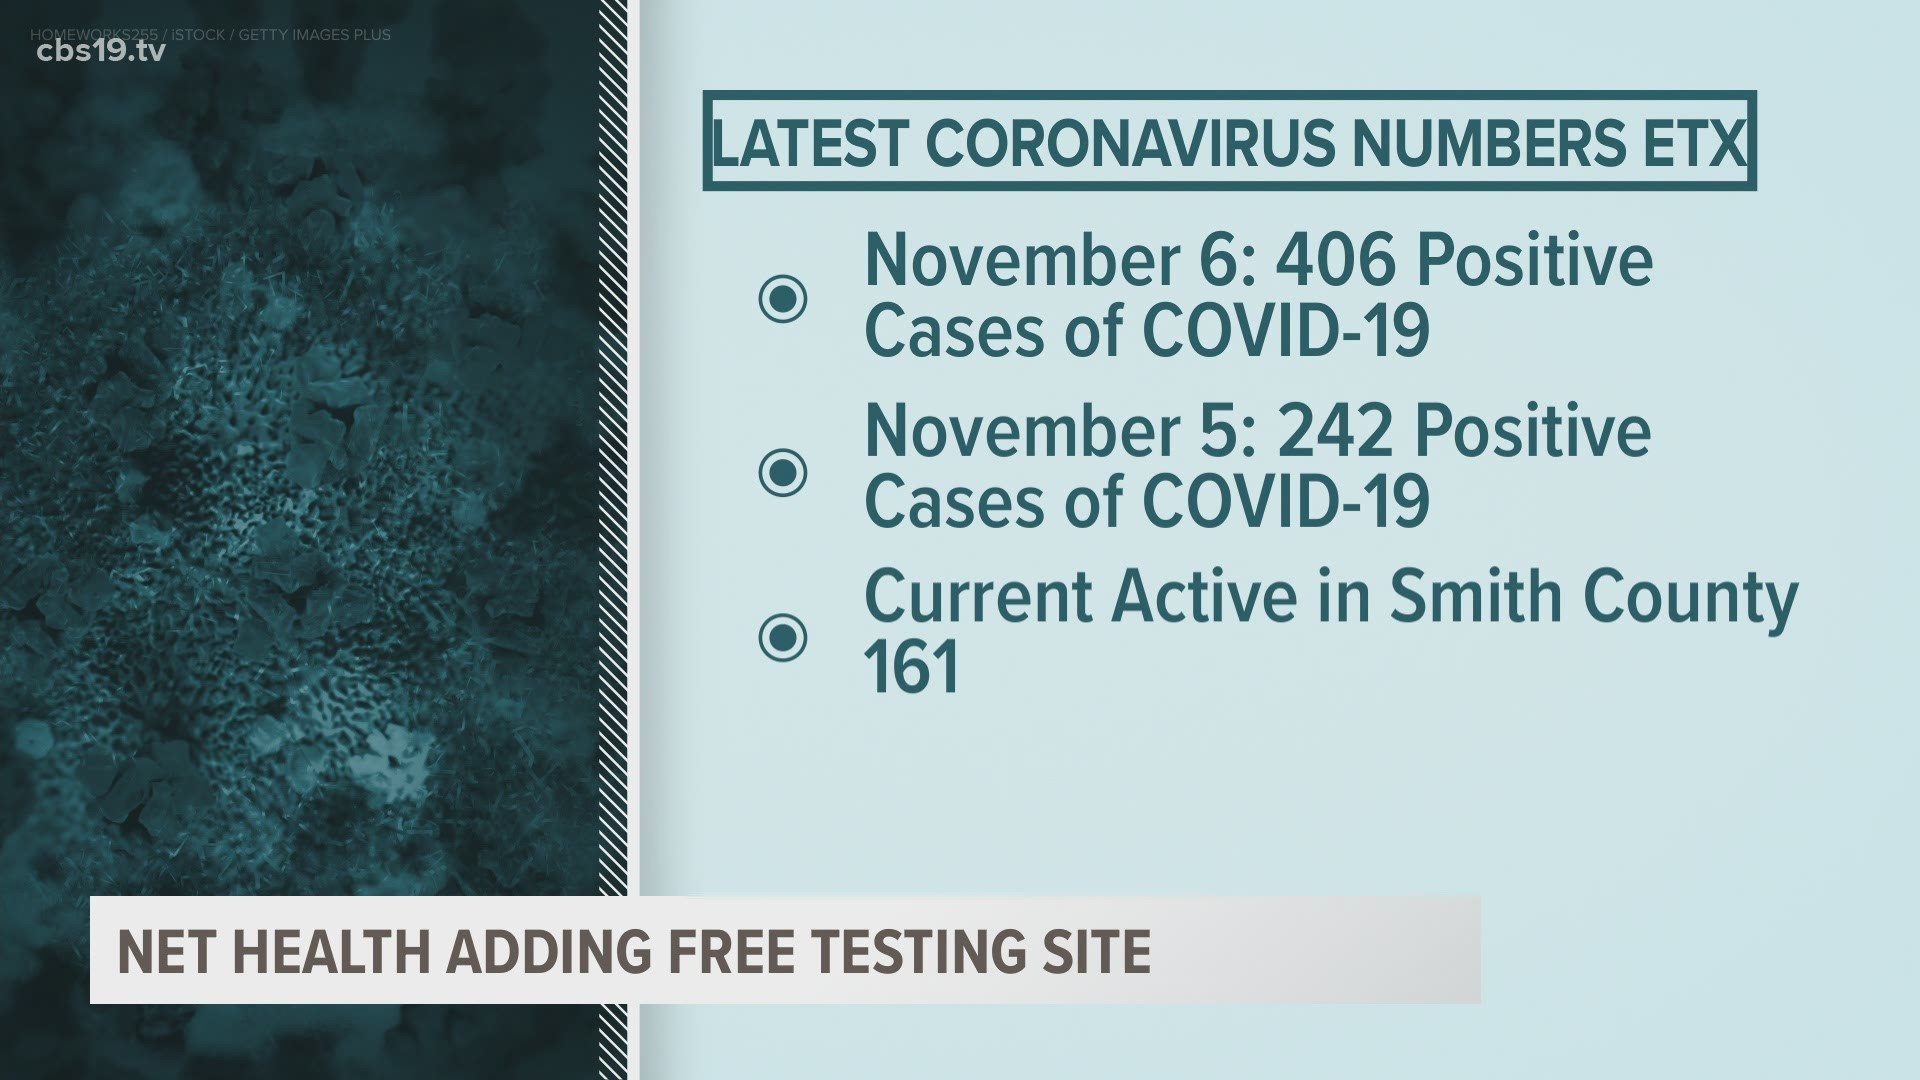 New coronavirus testing site opening in Tyler